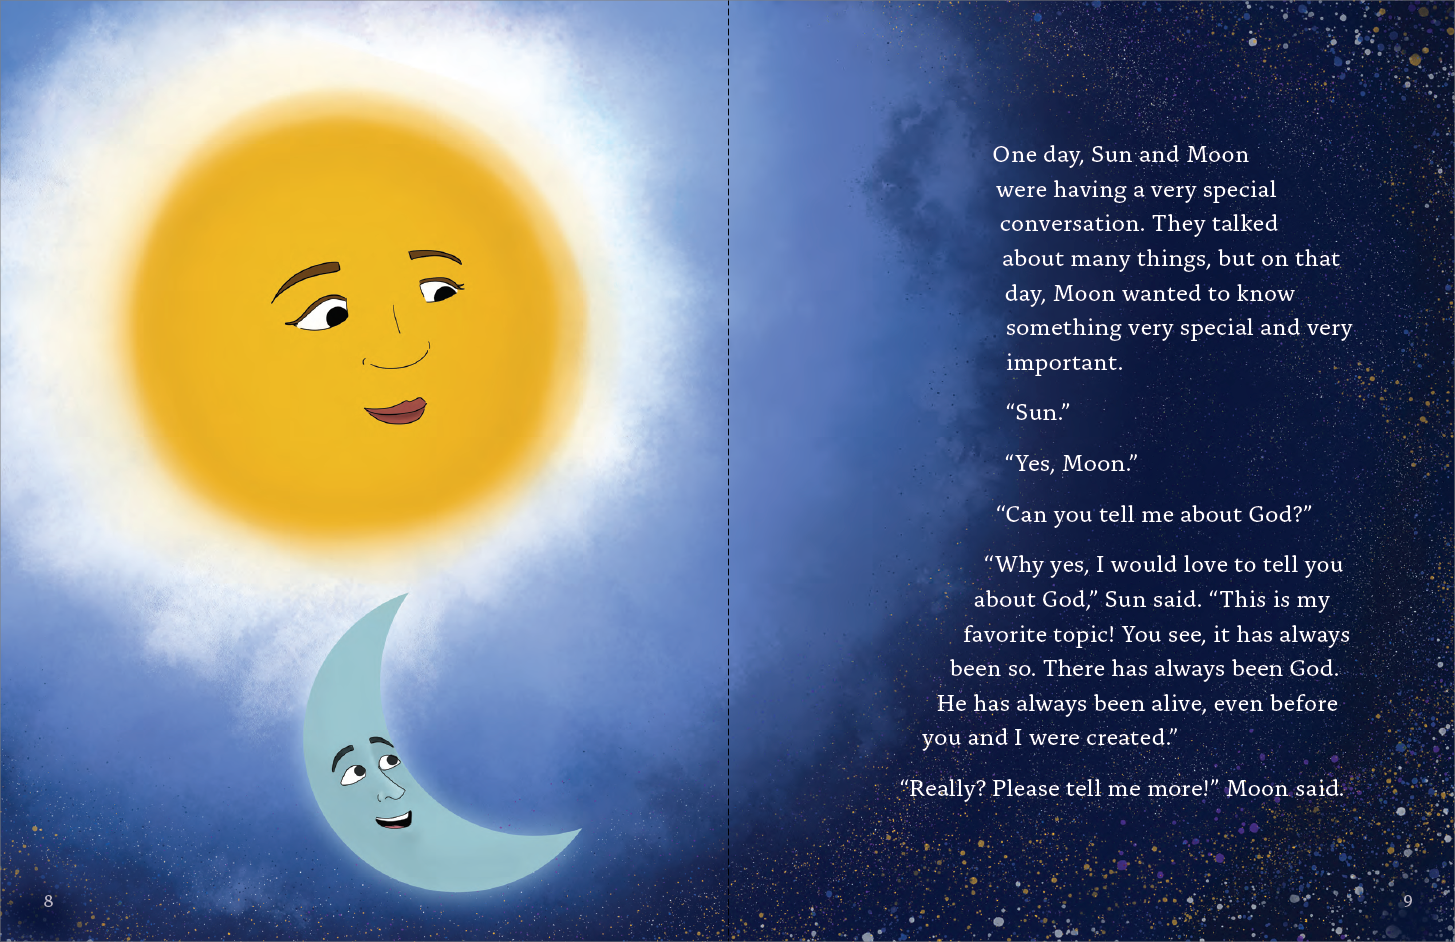 Soleil et Lune : une conversation sur Dieu